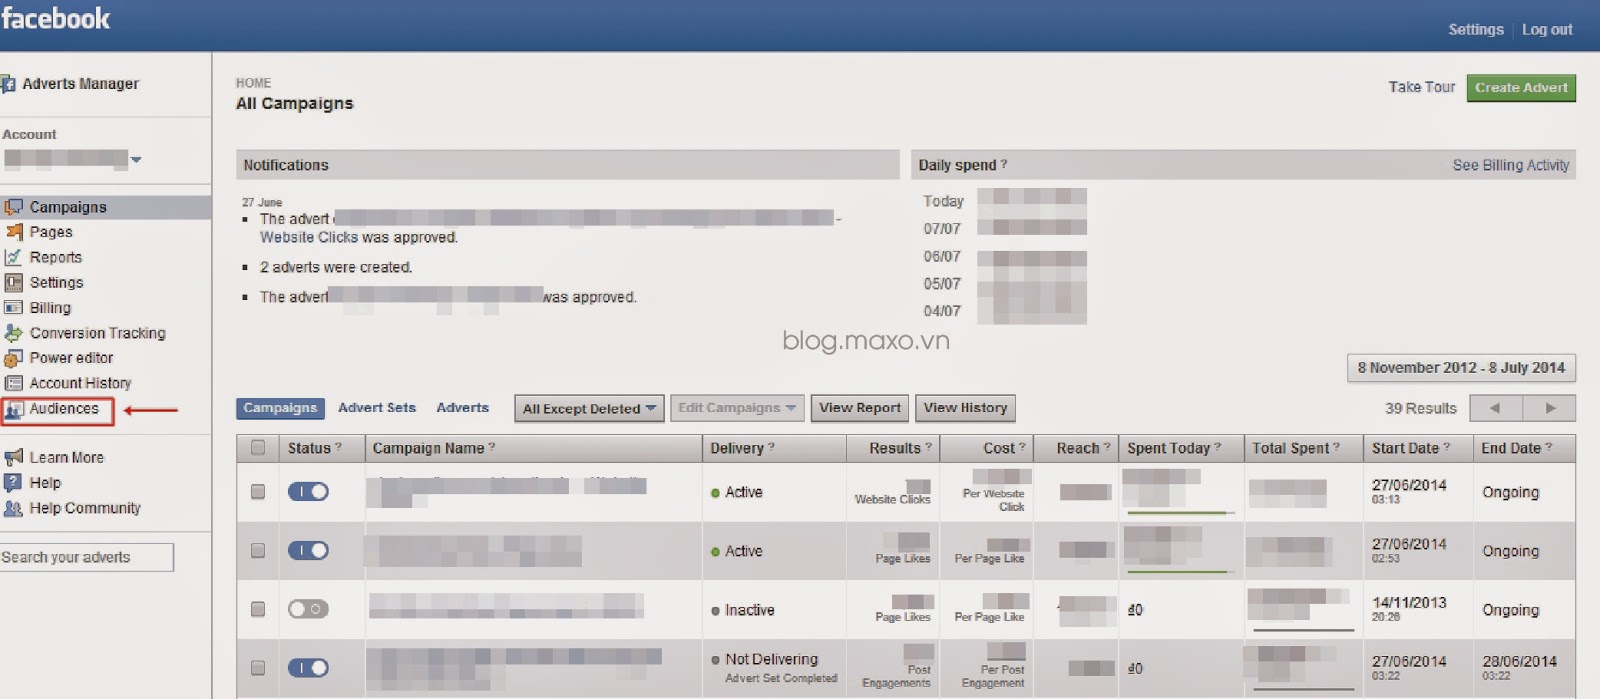 Đăng nhập vào Advert Manager của Facebook / chọn tab Audiences ở thanh menu bên trái